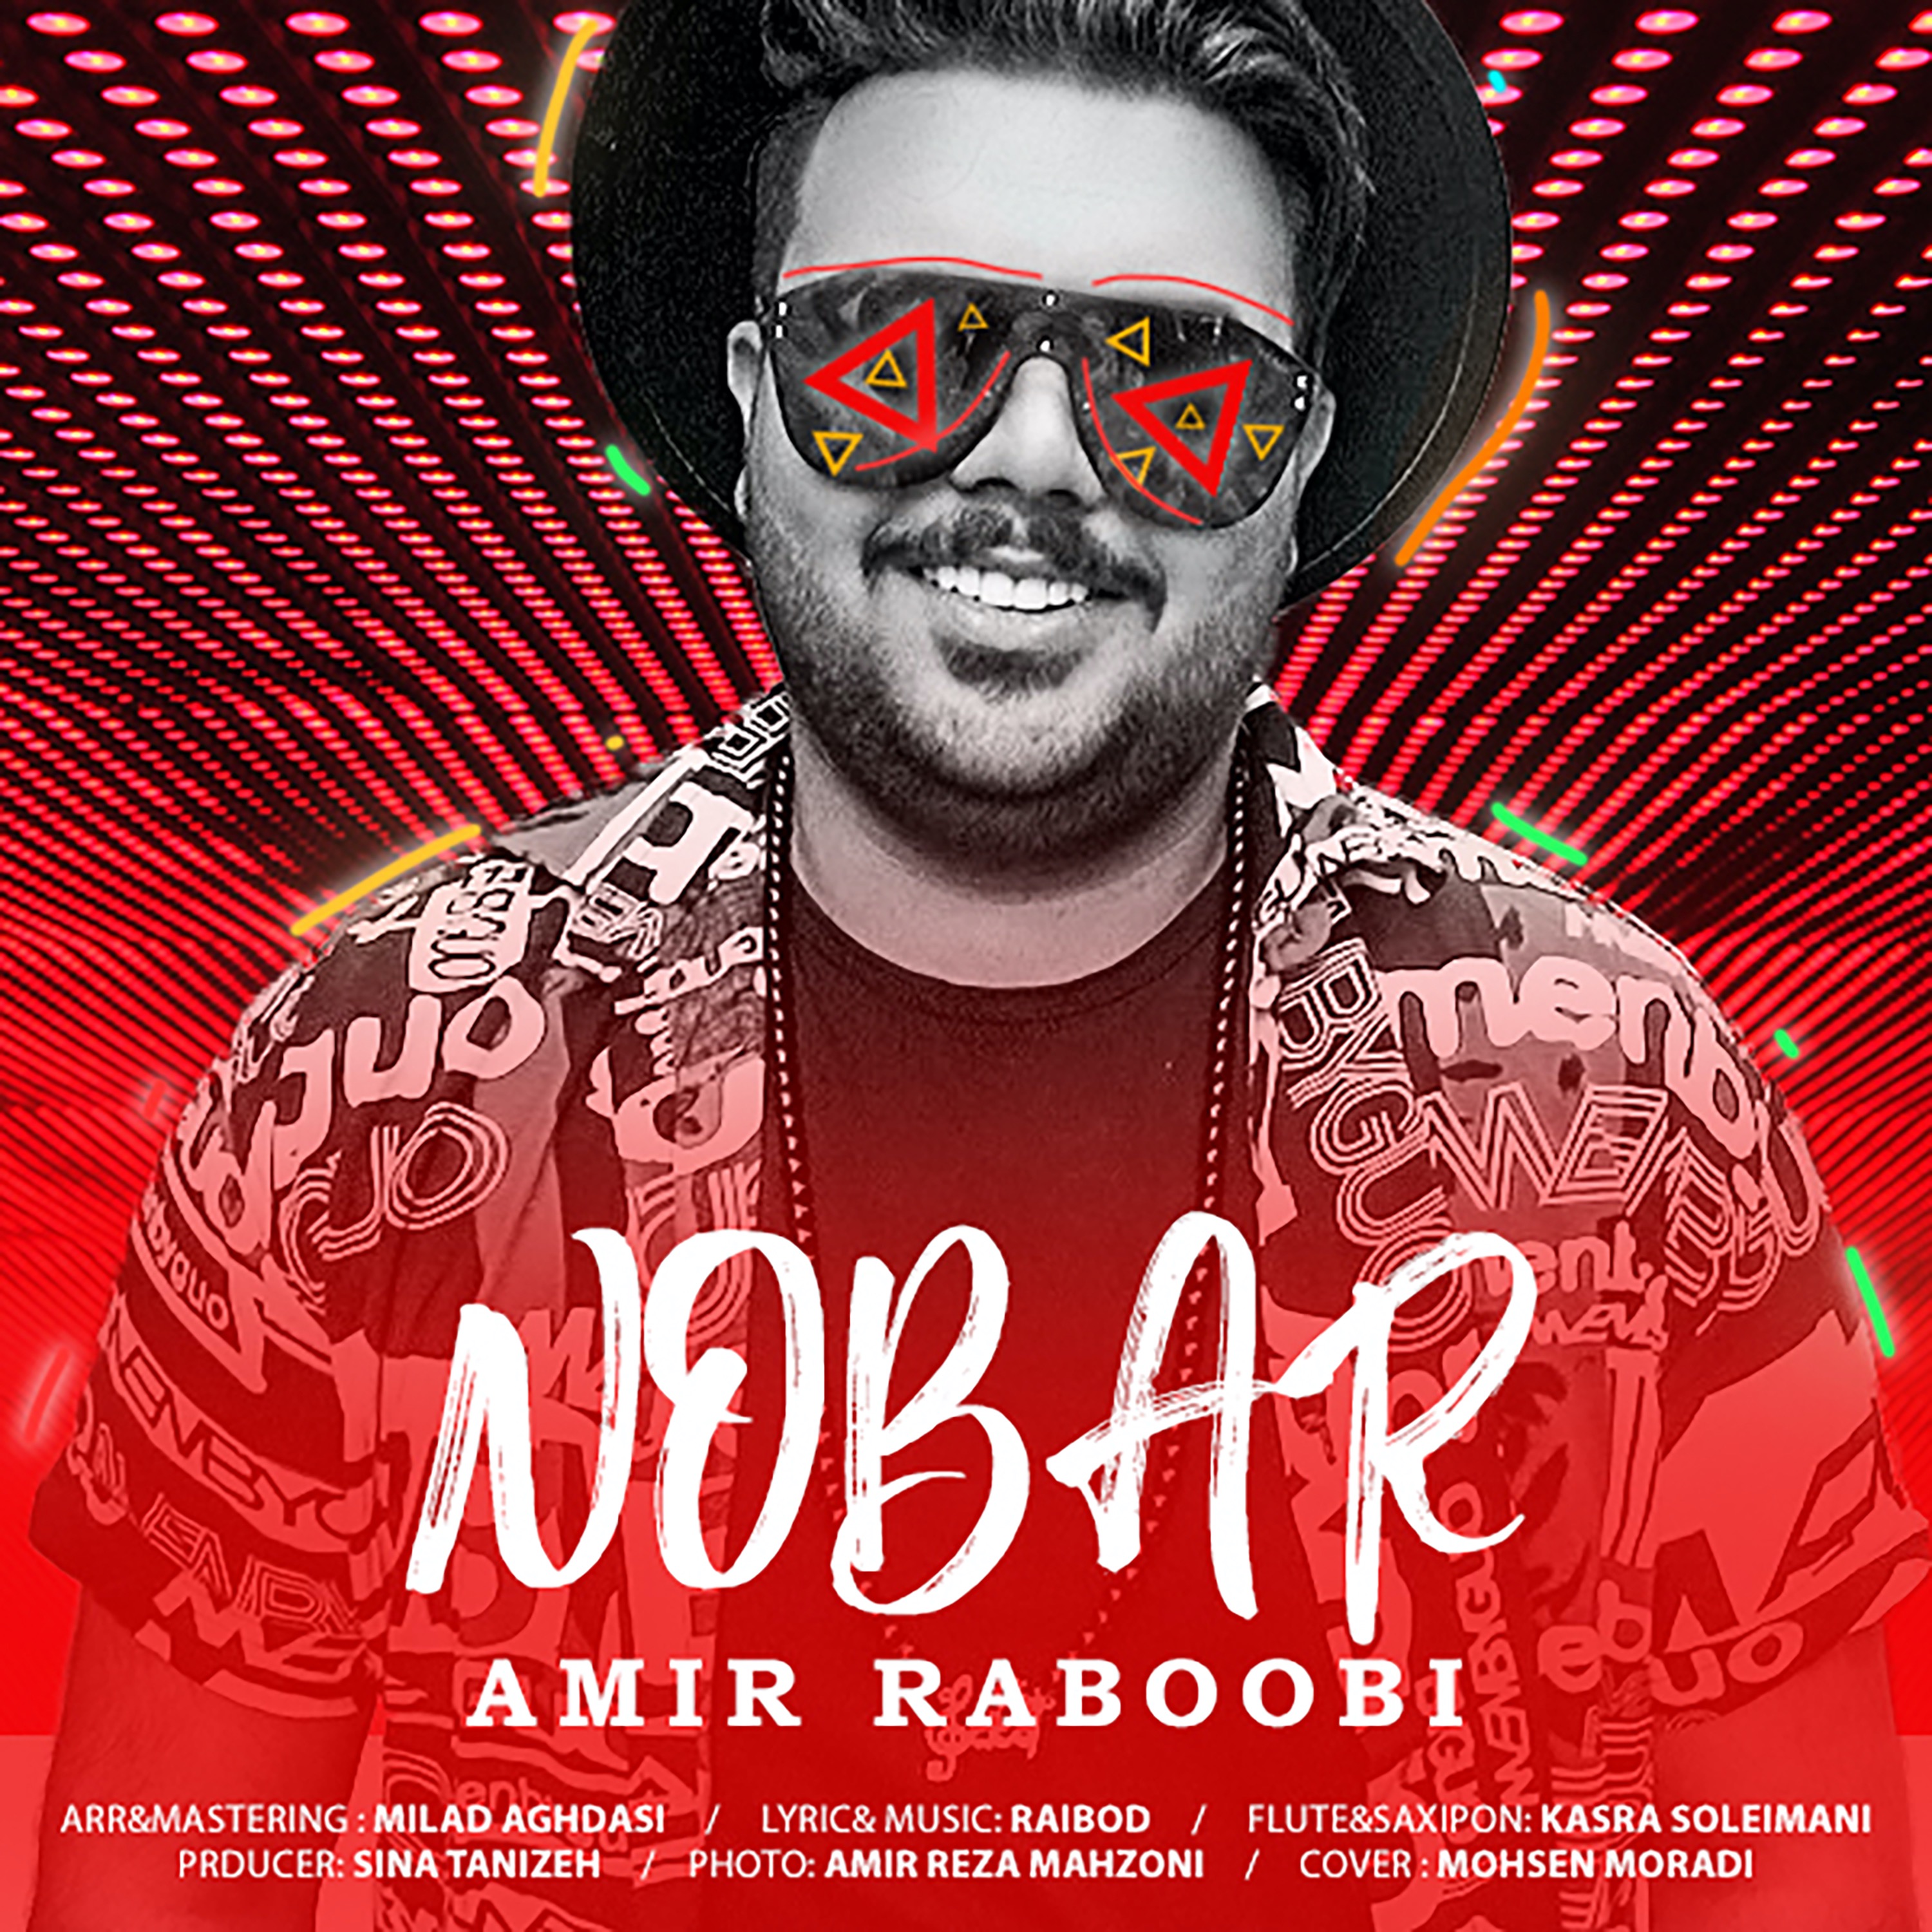  دانلود آهنگ جدید امیر ربوبی - نوبر | Download New Music By Amir Raboobi - Nobar